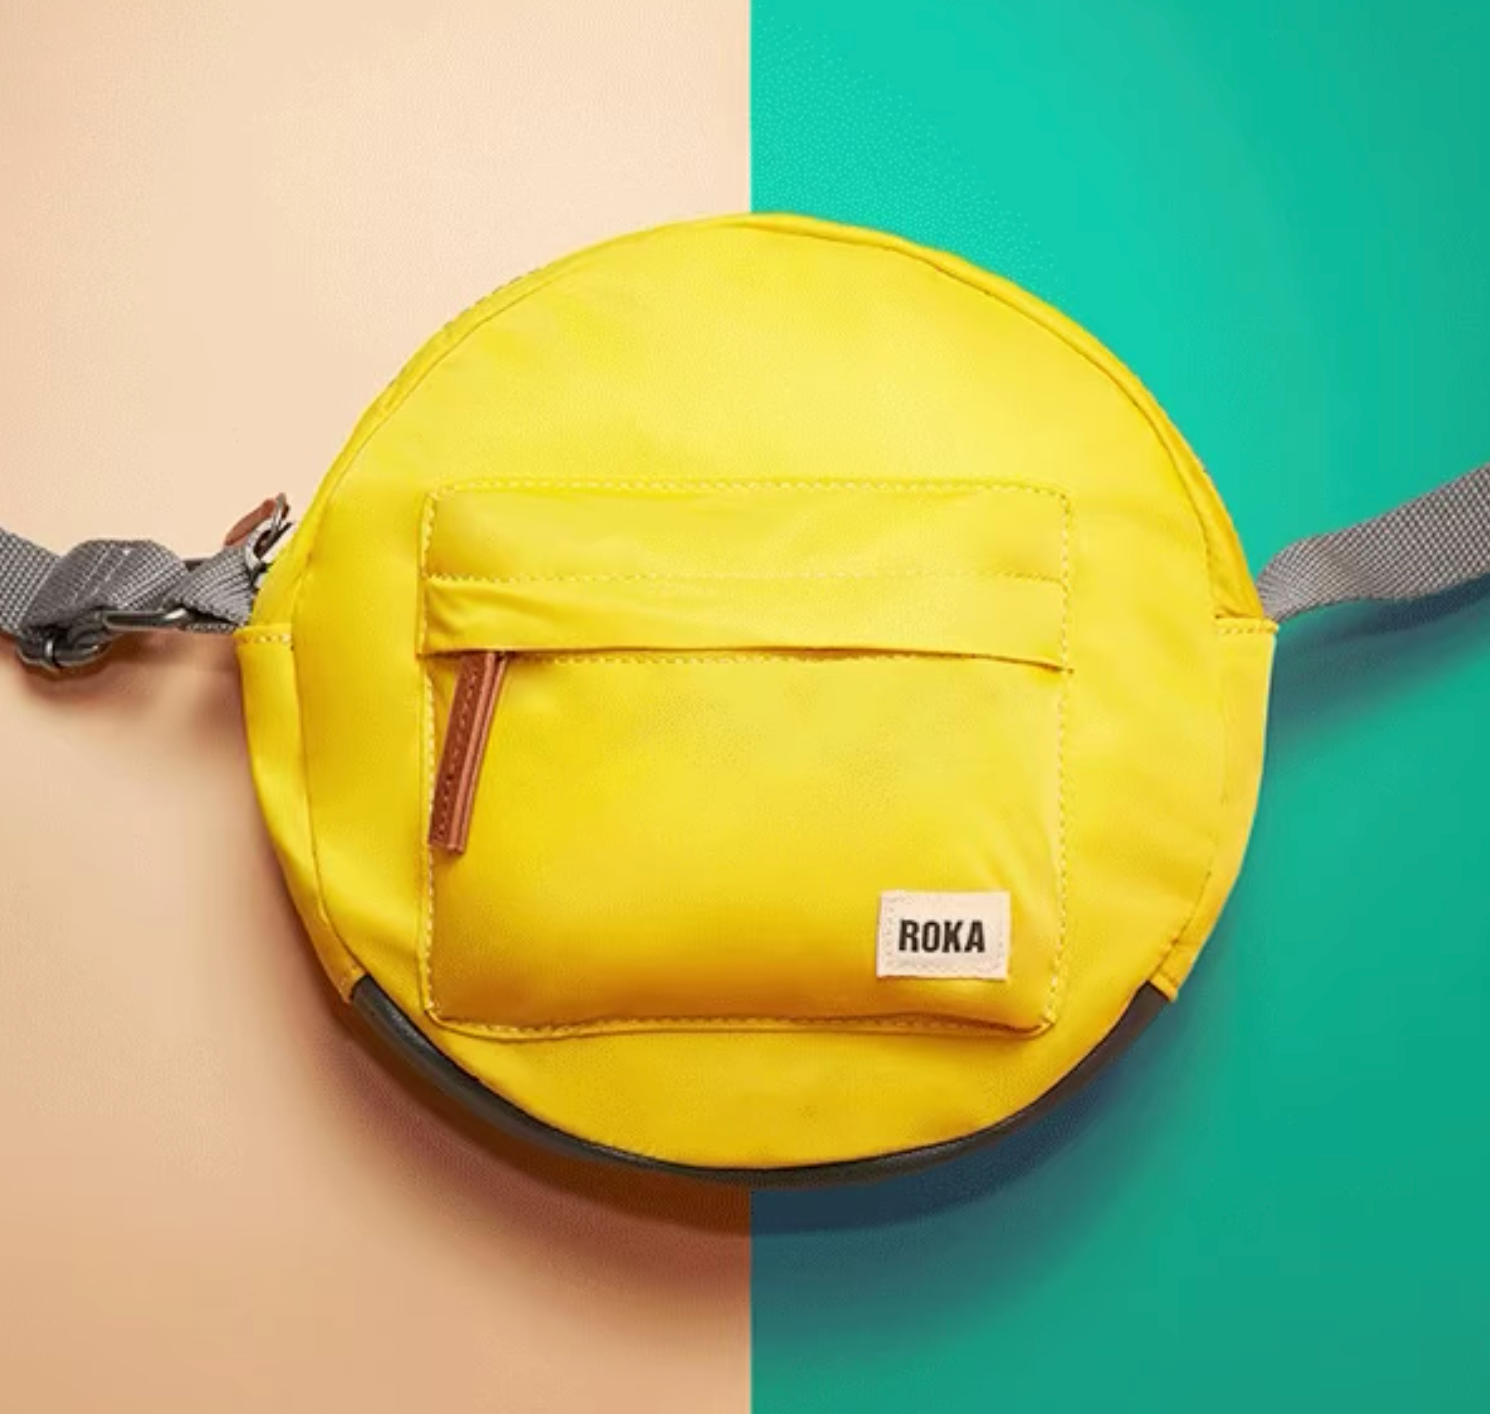 Stylish and sustainable backpacks